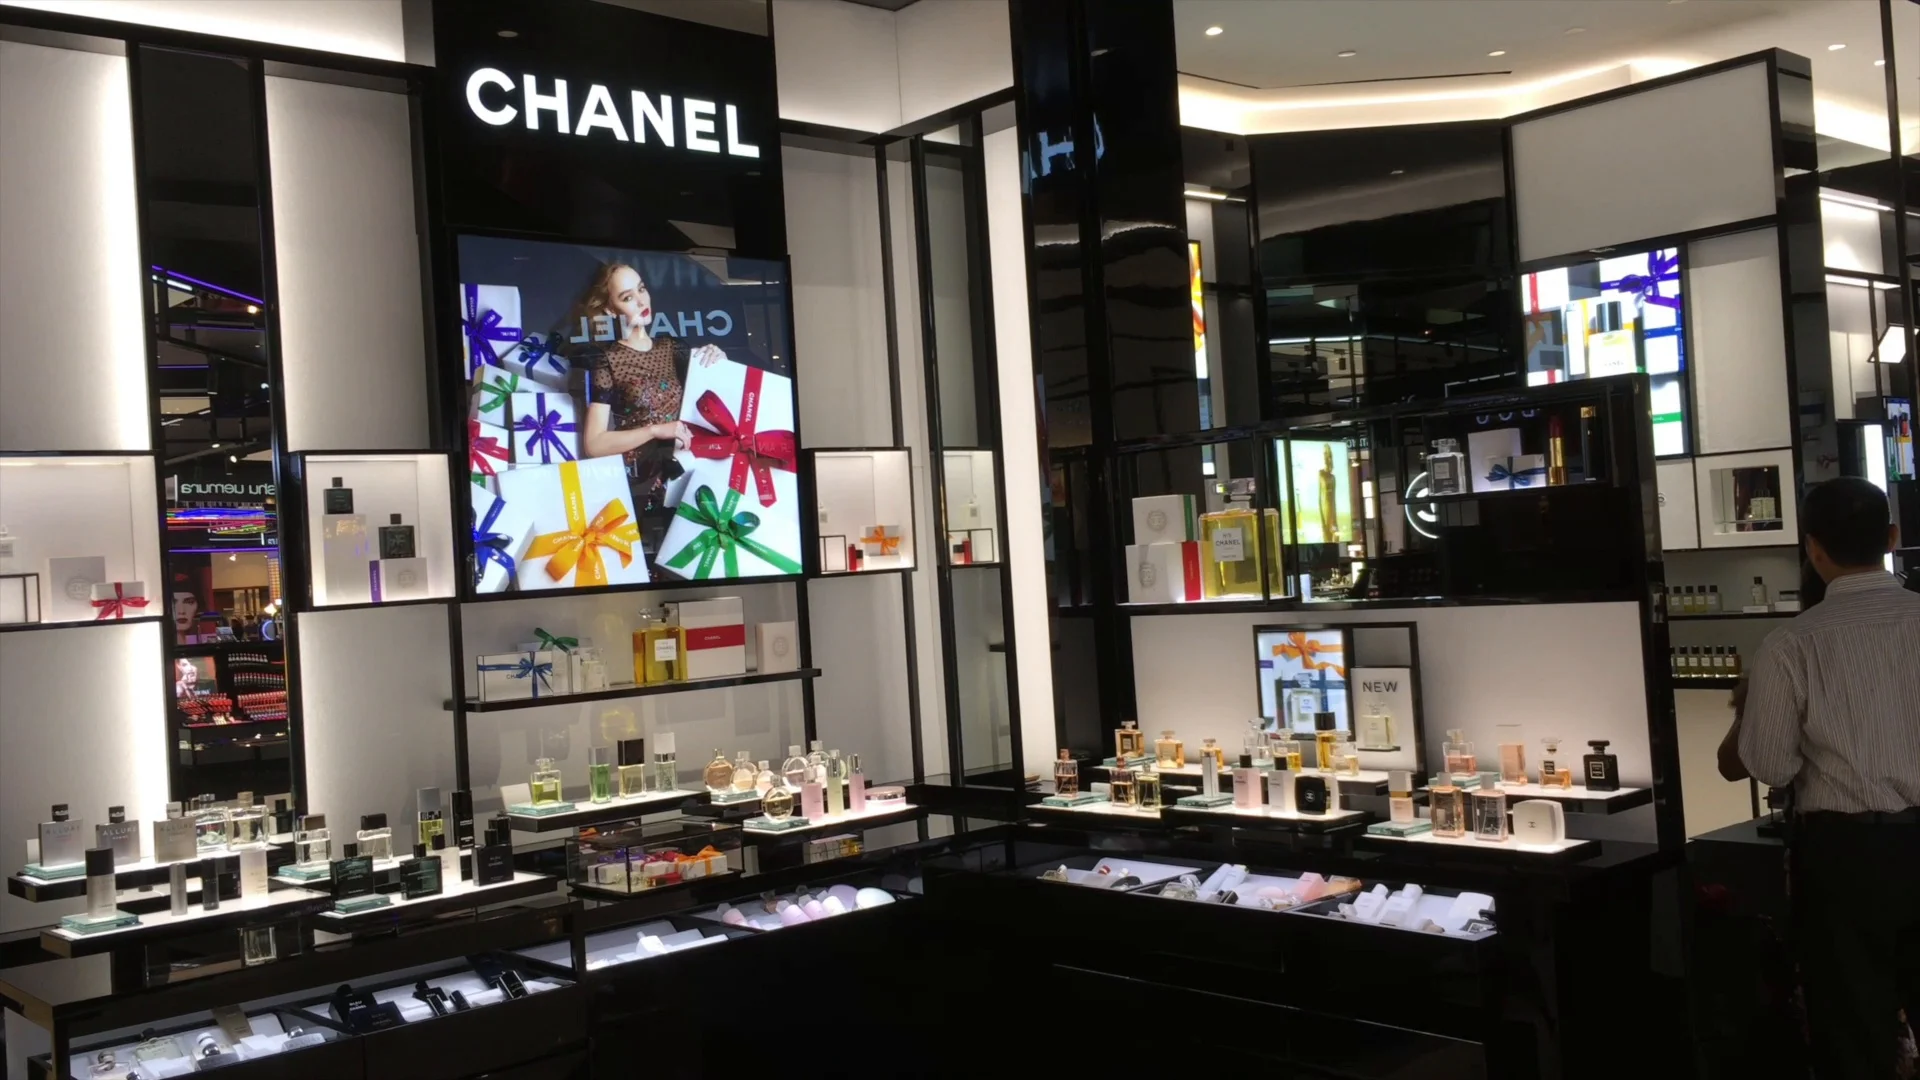 Bangkok: Chanel store renewal